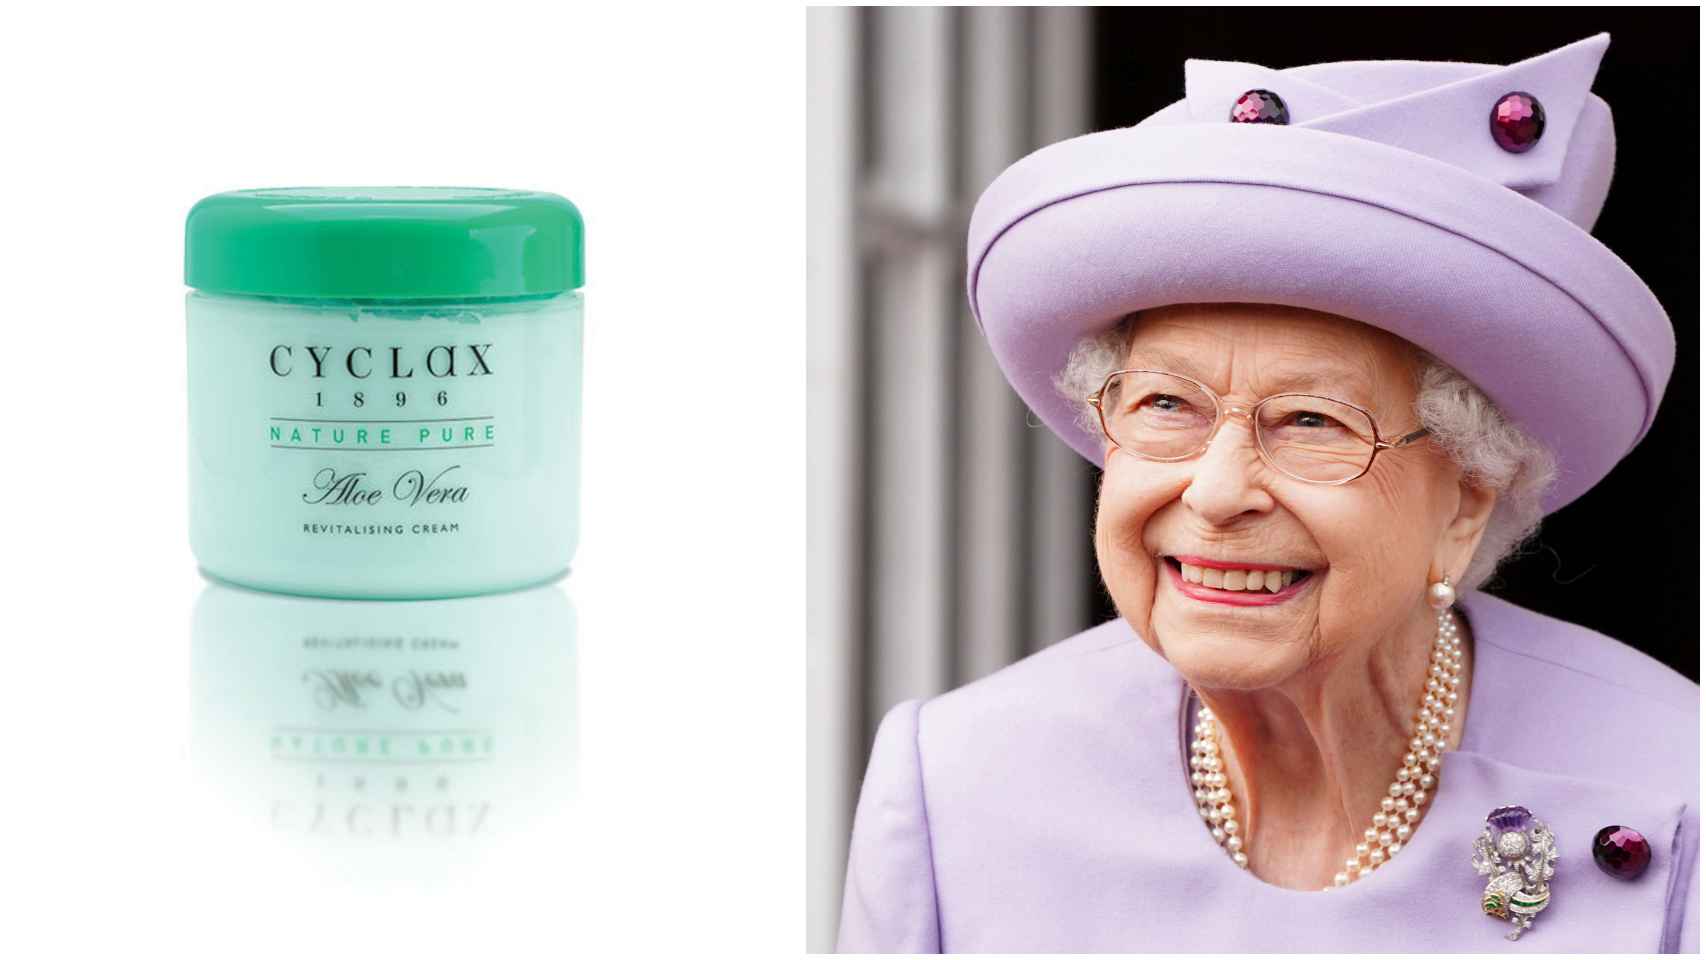 La reina Isabel II lleva décadas utilizando la misma crema facial en su rutina de belleza.